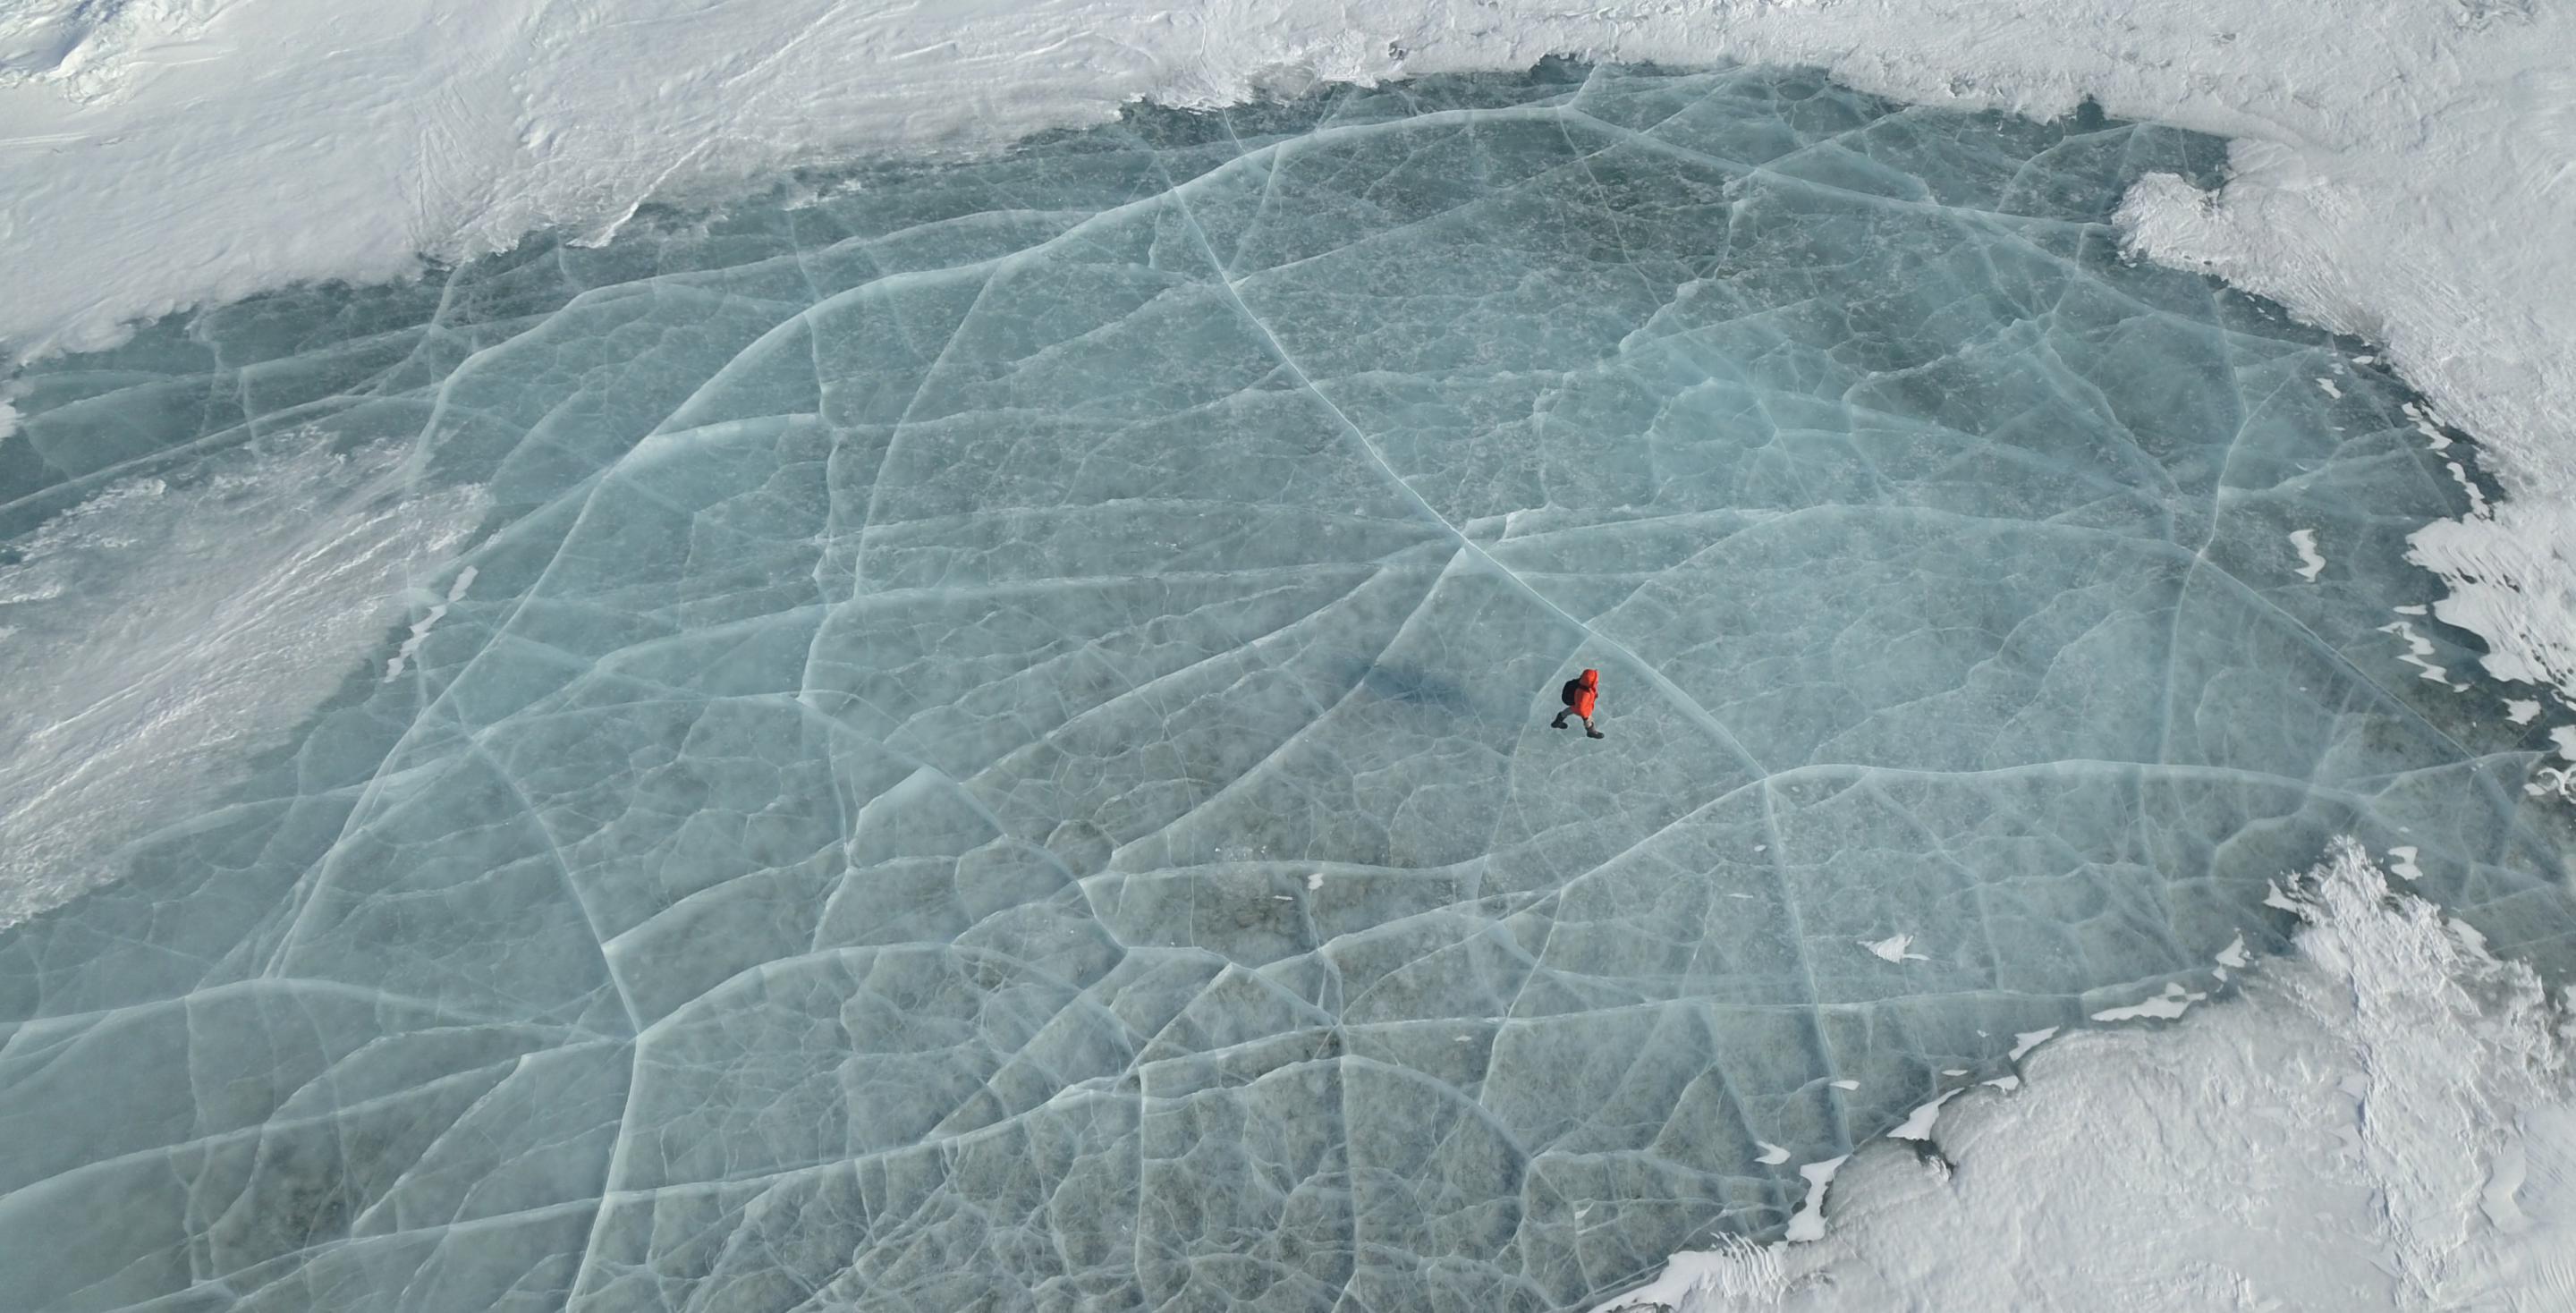 La glace n'est pas homogène et peut &#34;emprisonner&#34; de la neige ou des couches successives de glace qui offrent alors des mosaïques étonnantes. Le drone permet un point de vue inédit. Lac Baïkal - Sibérie - Russie